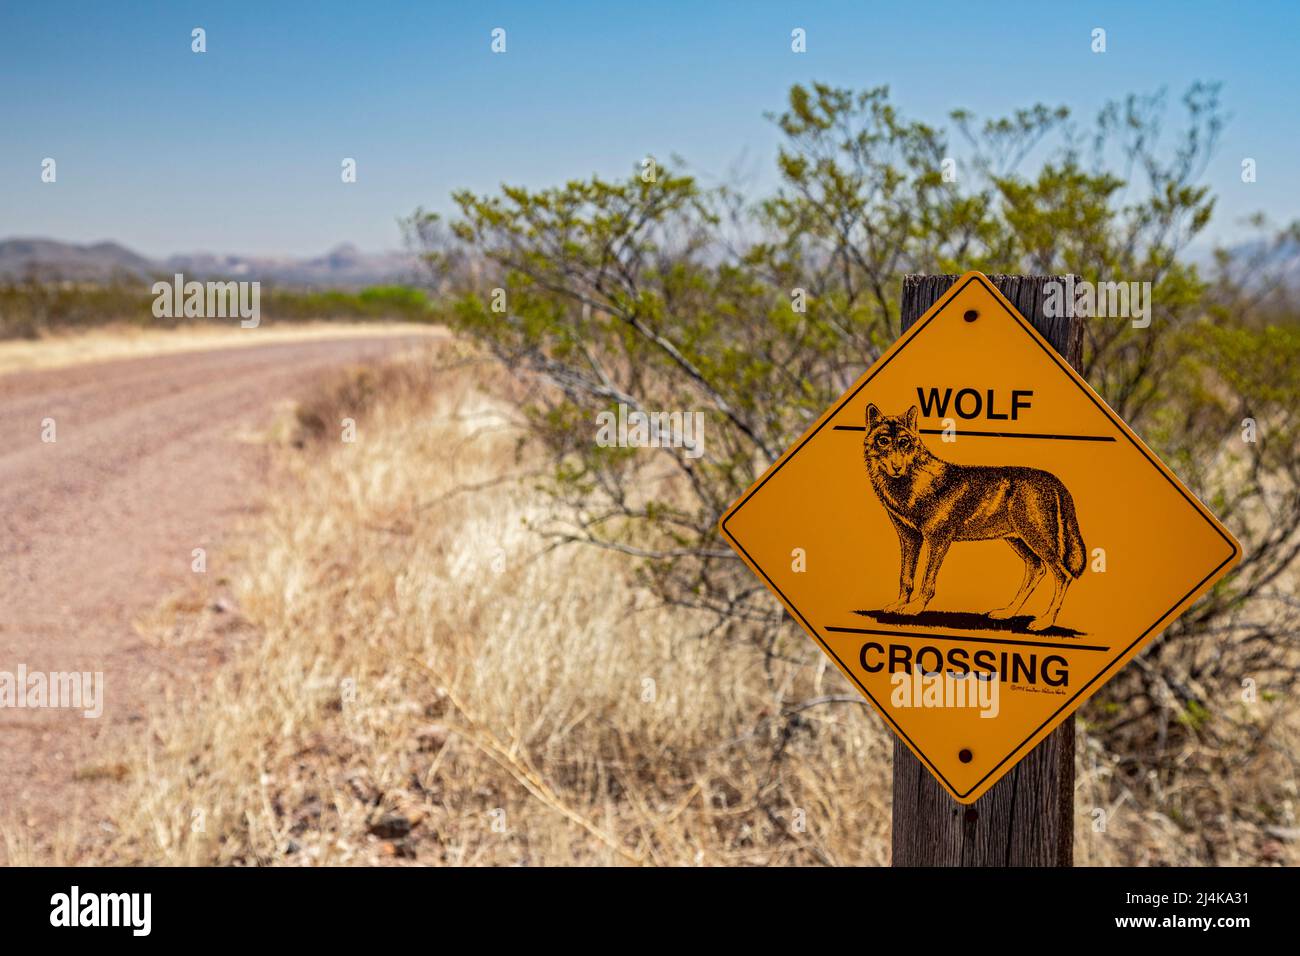 Douglas, Arizona - Ein Schild warnt vor einem Wolfstreck auf dem Geronimo Trail, einer unbefestigten Straße in der Chihuahuan-Wüste nahe der US-mexikanischen Grenze. Stockfoto